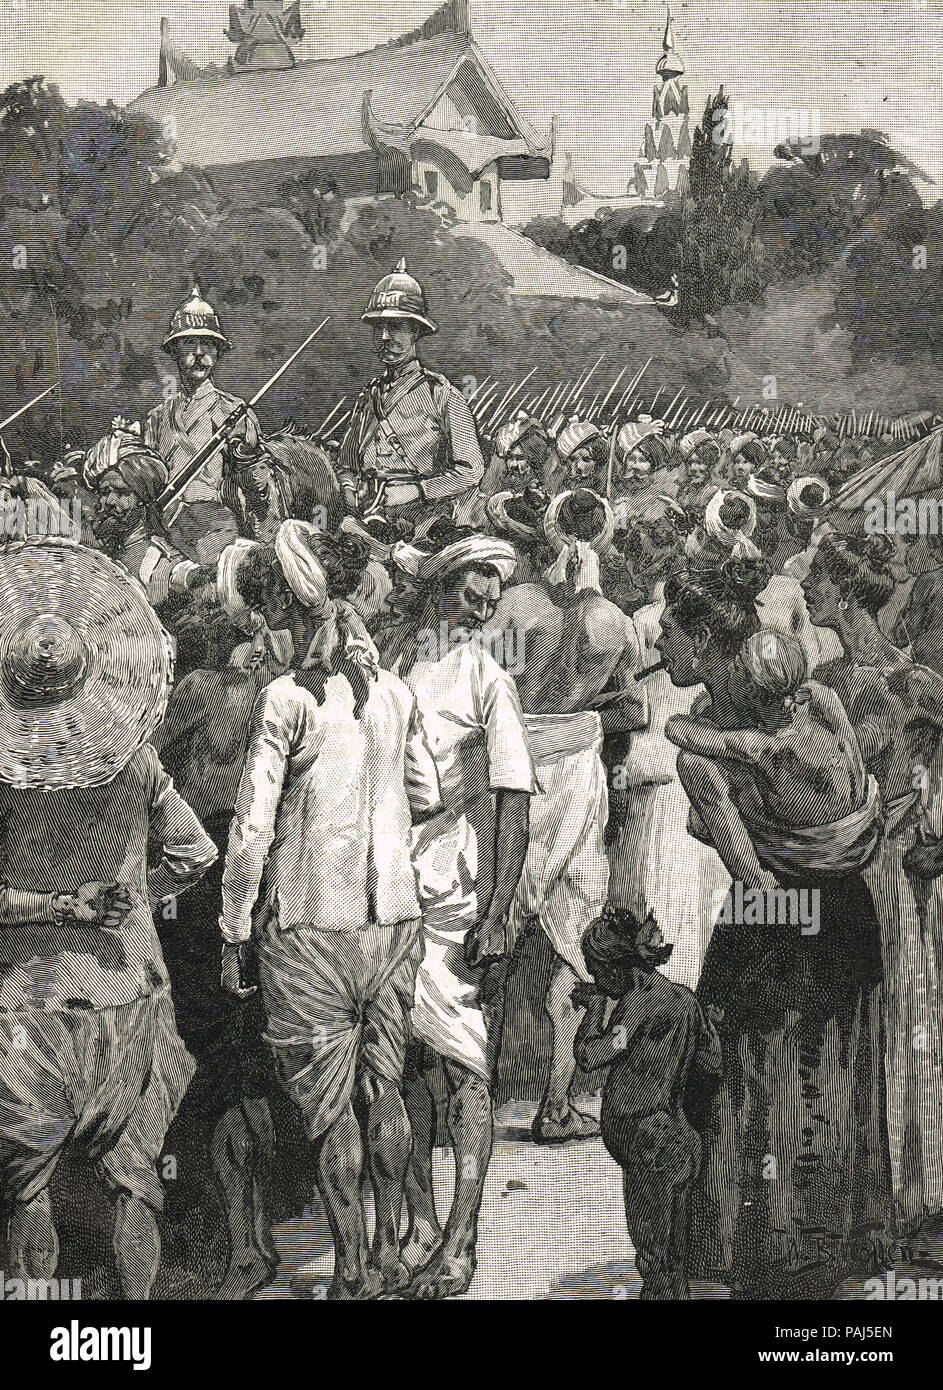 British forces entering Mandalay, Third Anglo-Burmese War, 28 November 1885 Stock Photo